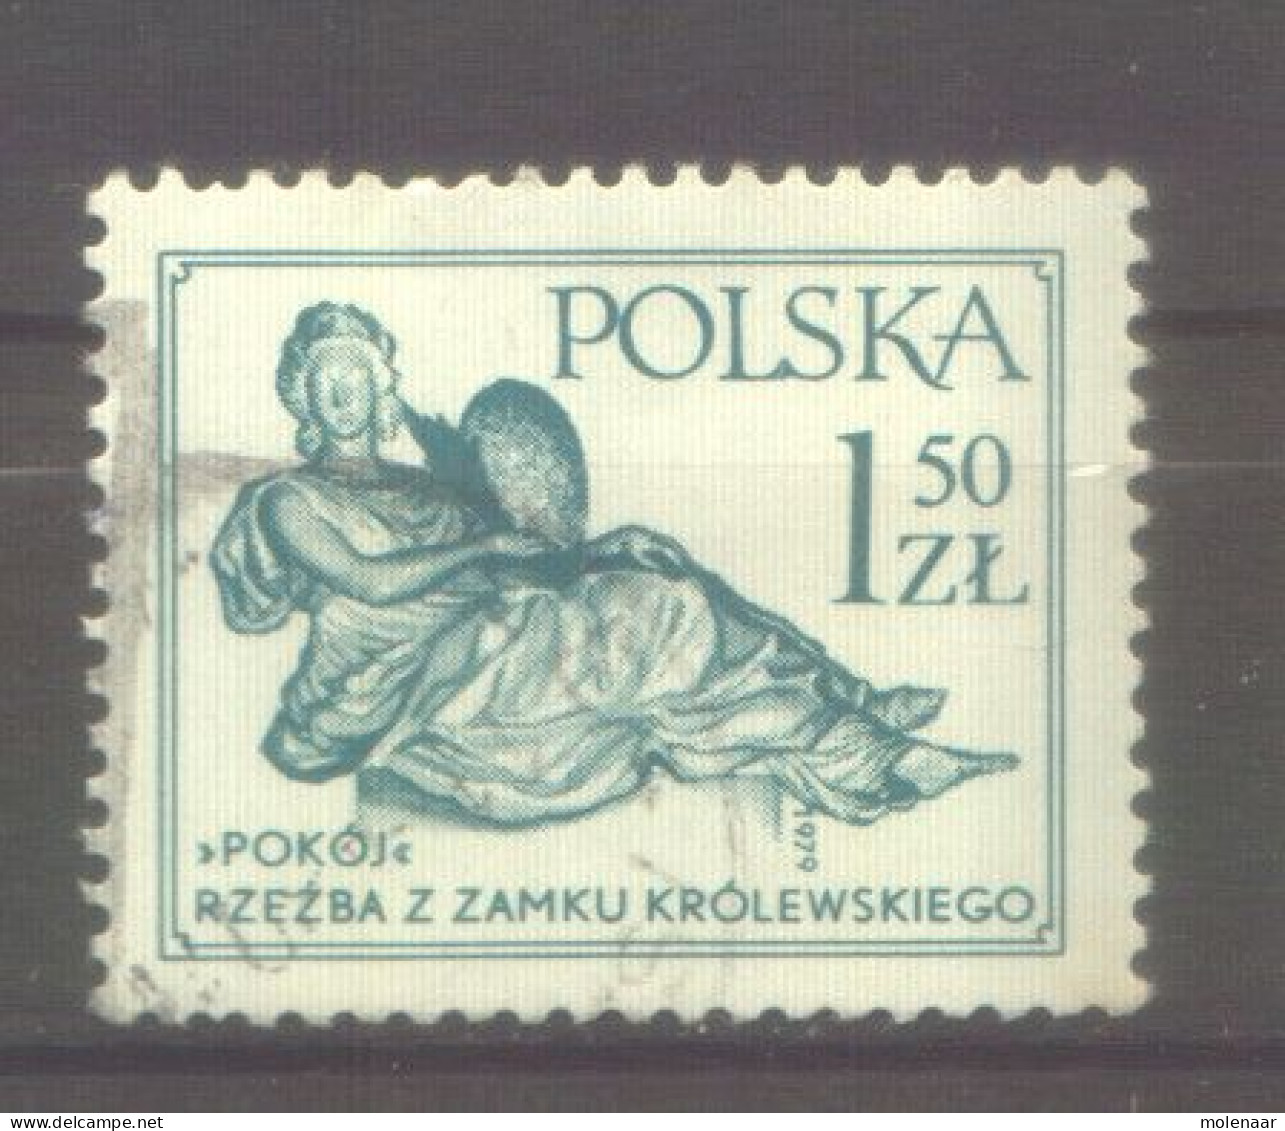 Postzegels > Europa > Polen > 1944-.... Republiek > 1971-80 > Gebruikt No. 2625  (12165) - Gebruikt